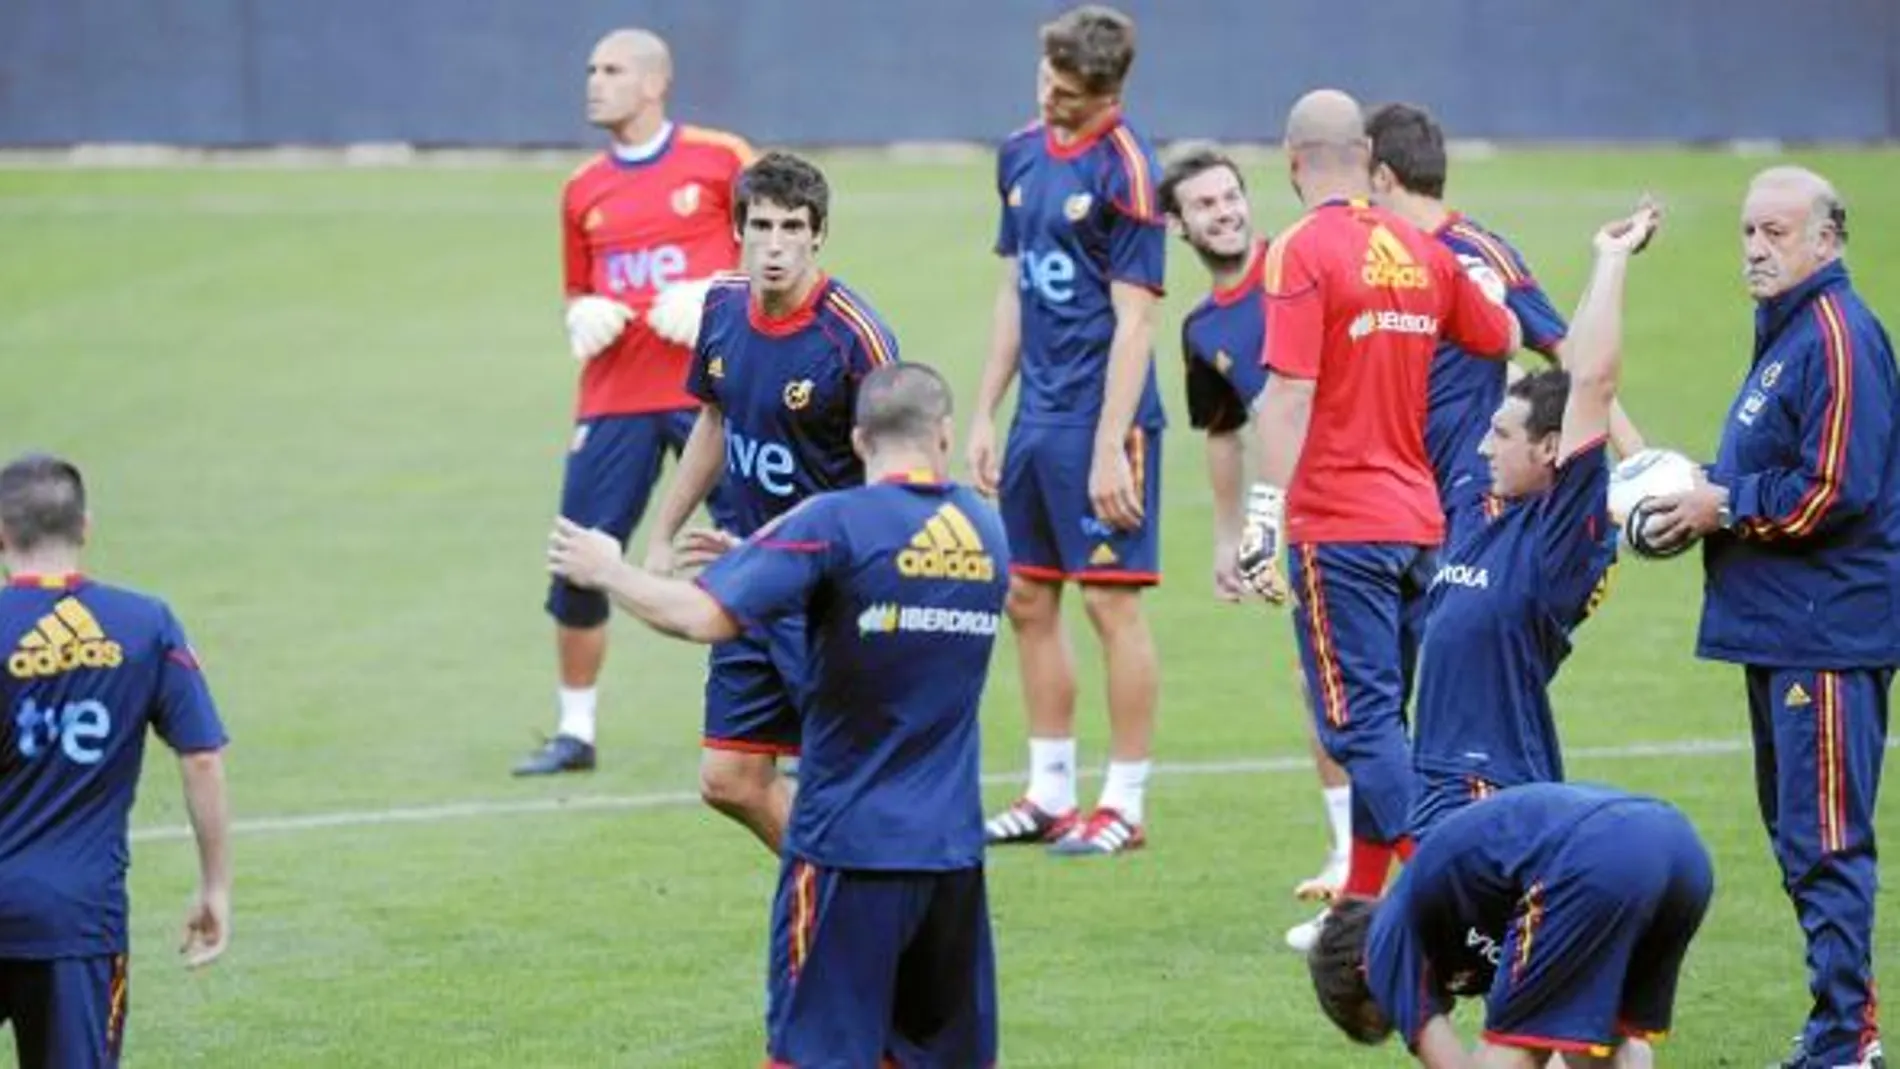 Del Bosque dirigió una suave sesión de entrenamiento. En la imagen, el seleccionador, con un balón en la mano, observa a sus futbolistas